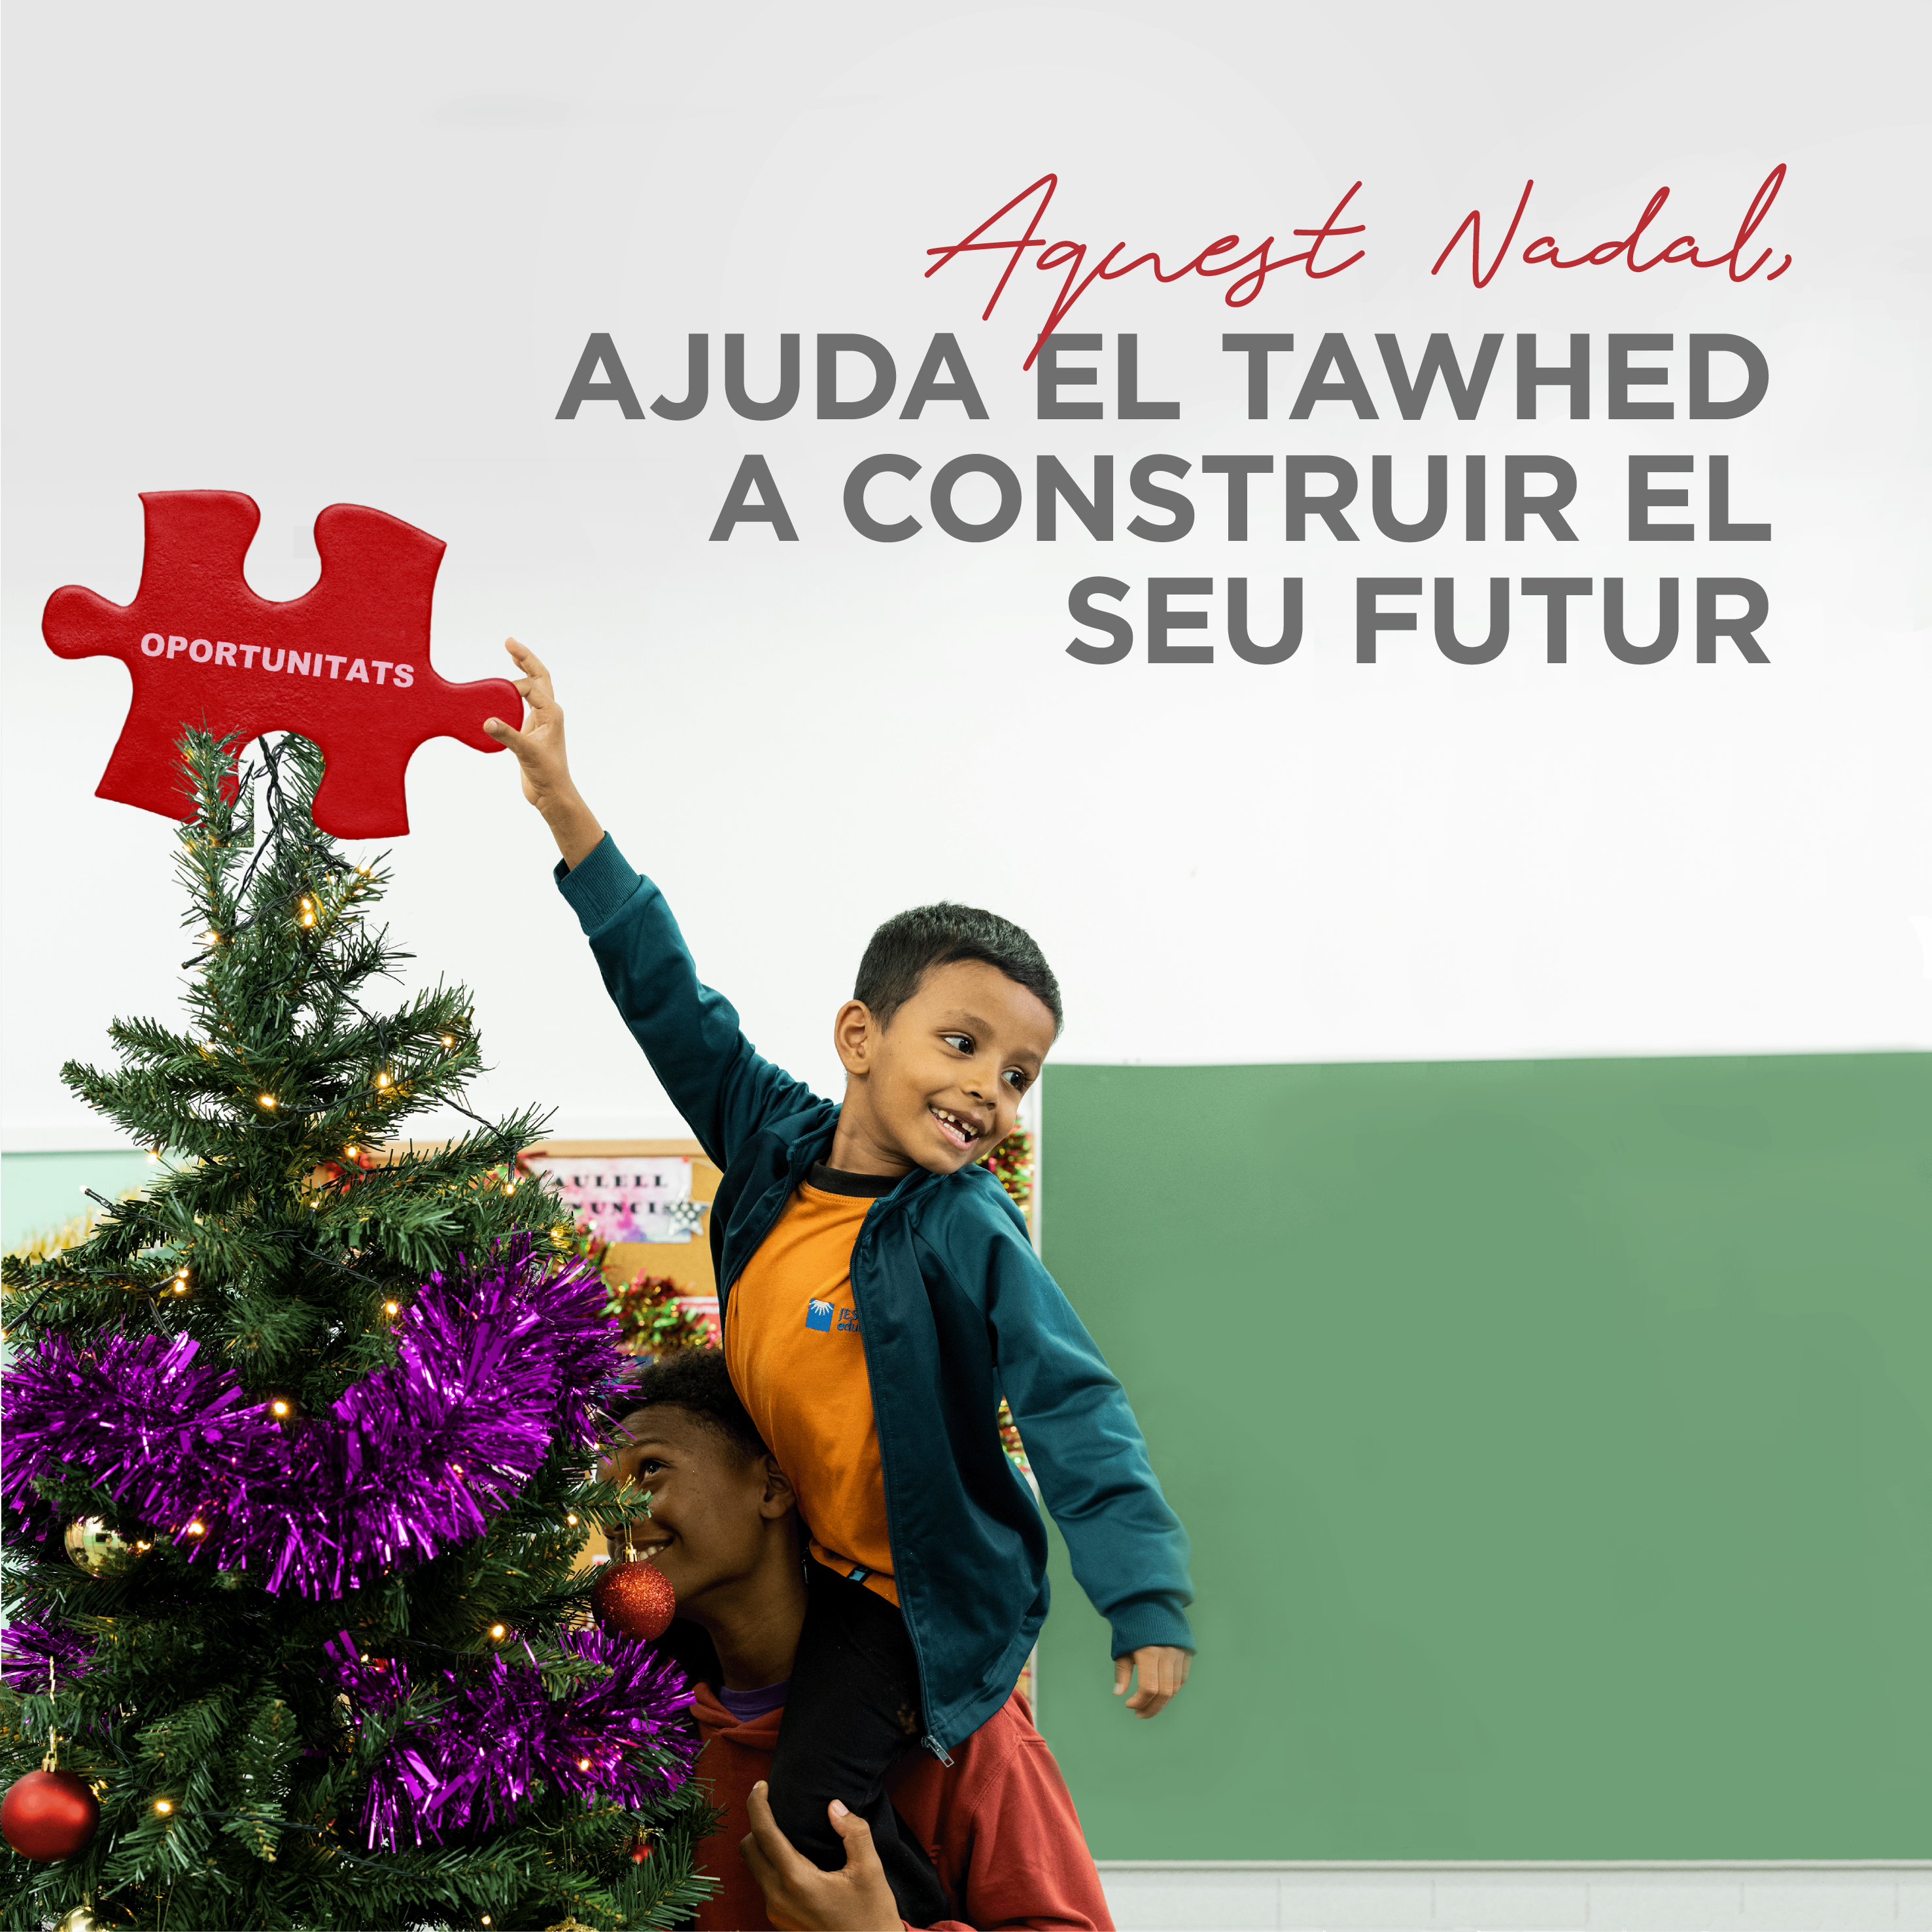 Esta Navidad, ayuda a Tawhed a construir su futuro